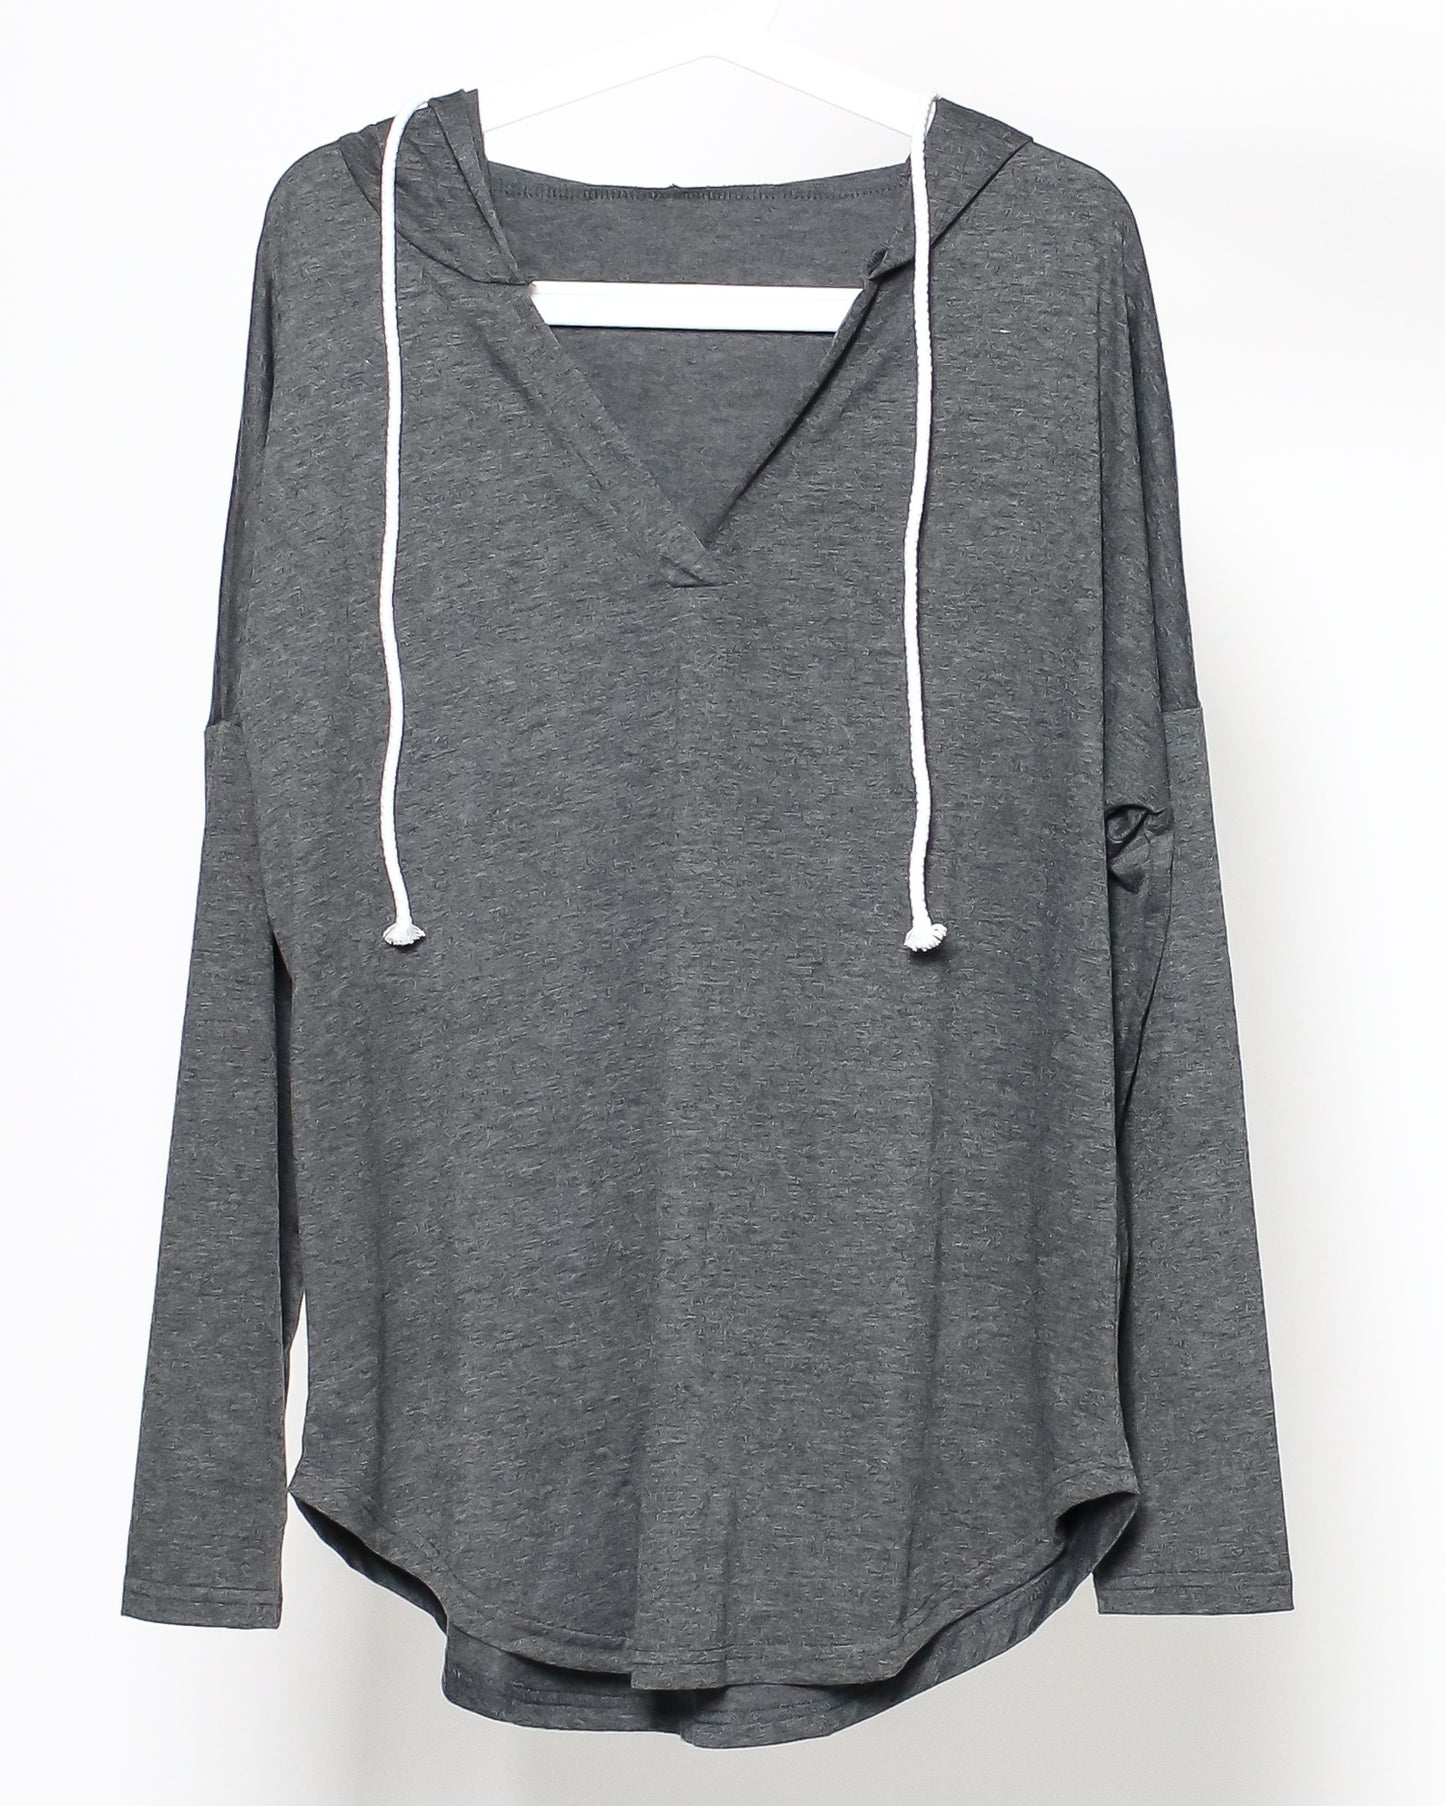 grey hoodie sports top *pre-order*